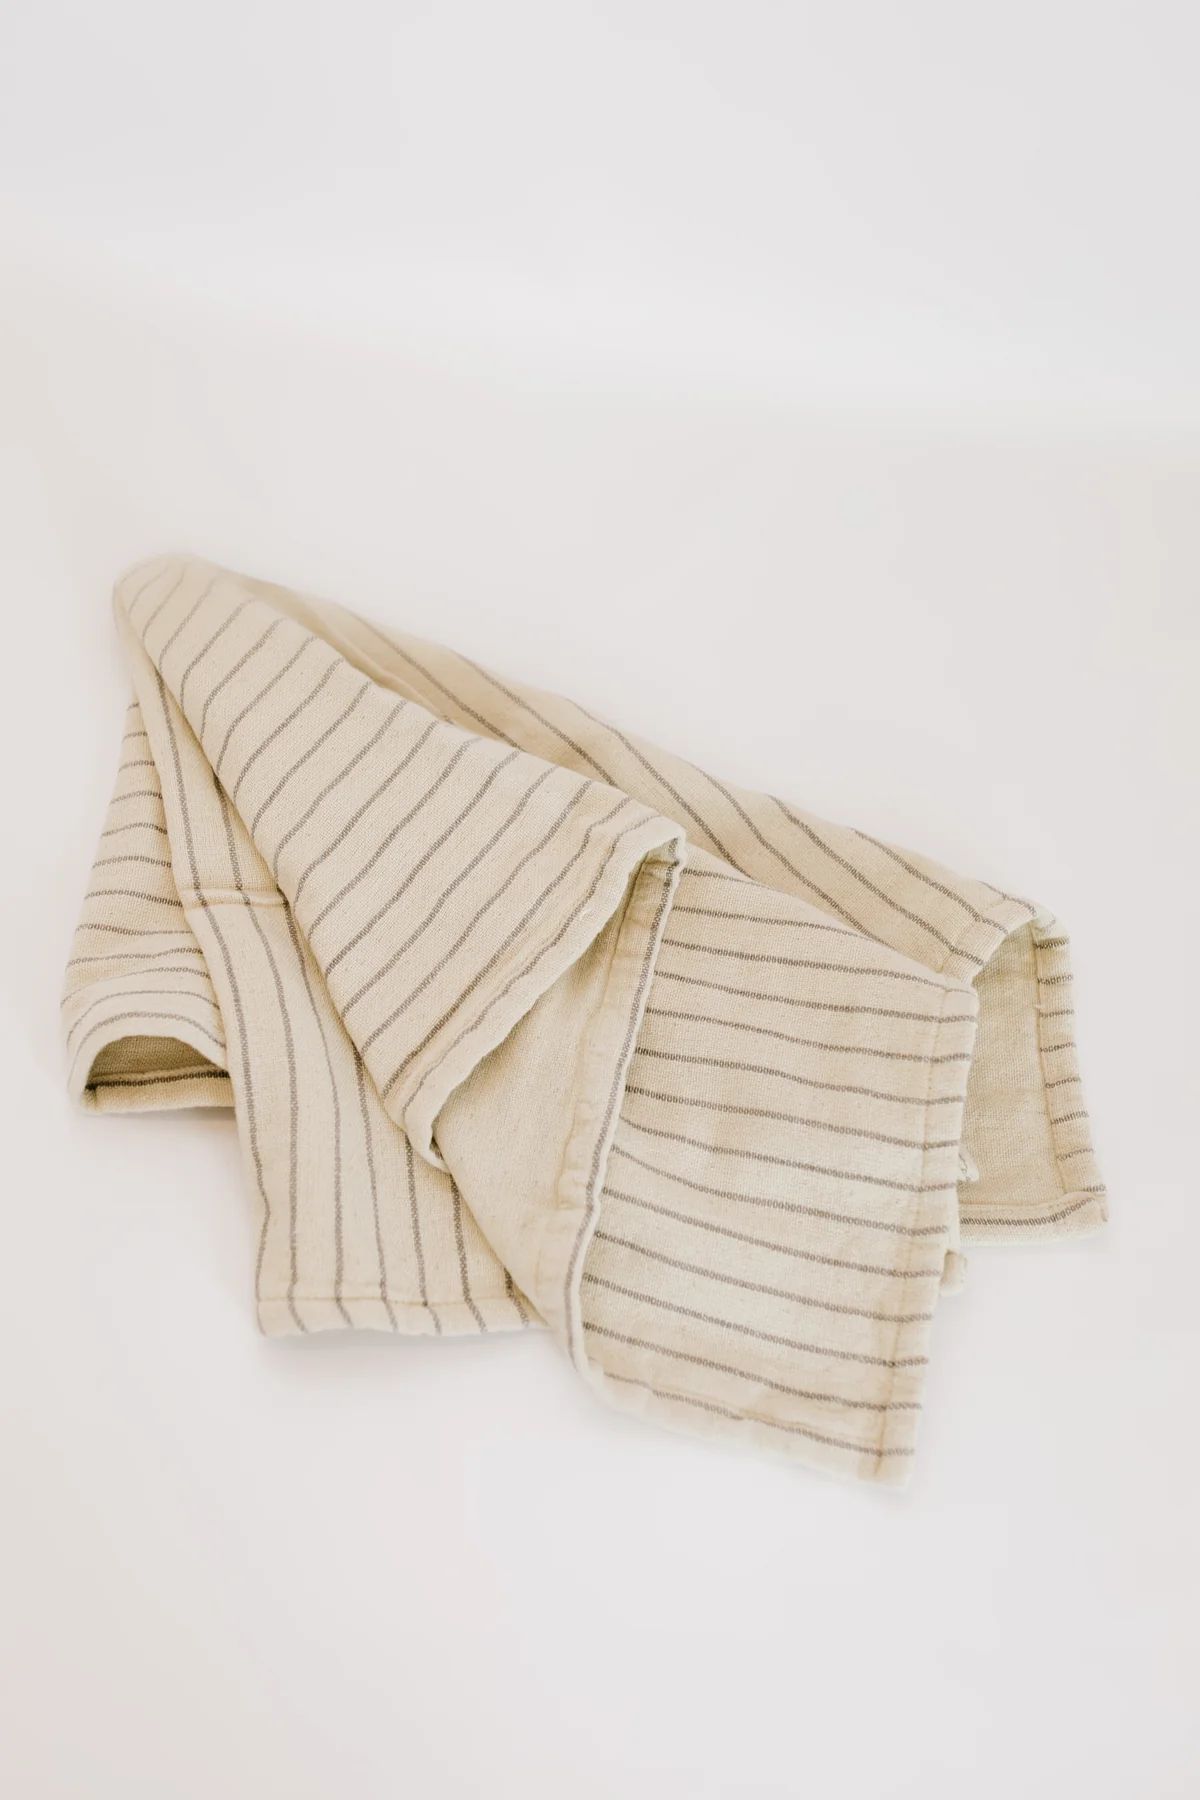 Kane Tea Towel - 2 Styles | THELIFESTYLEDCO